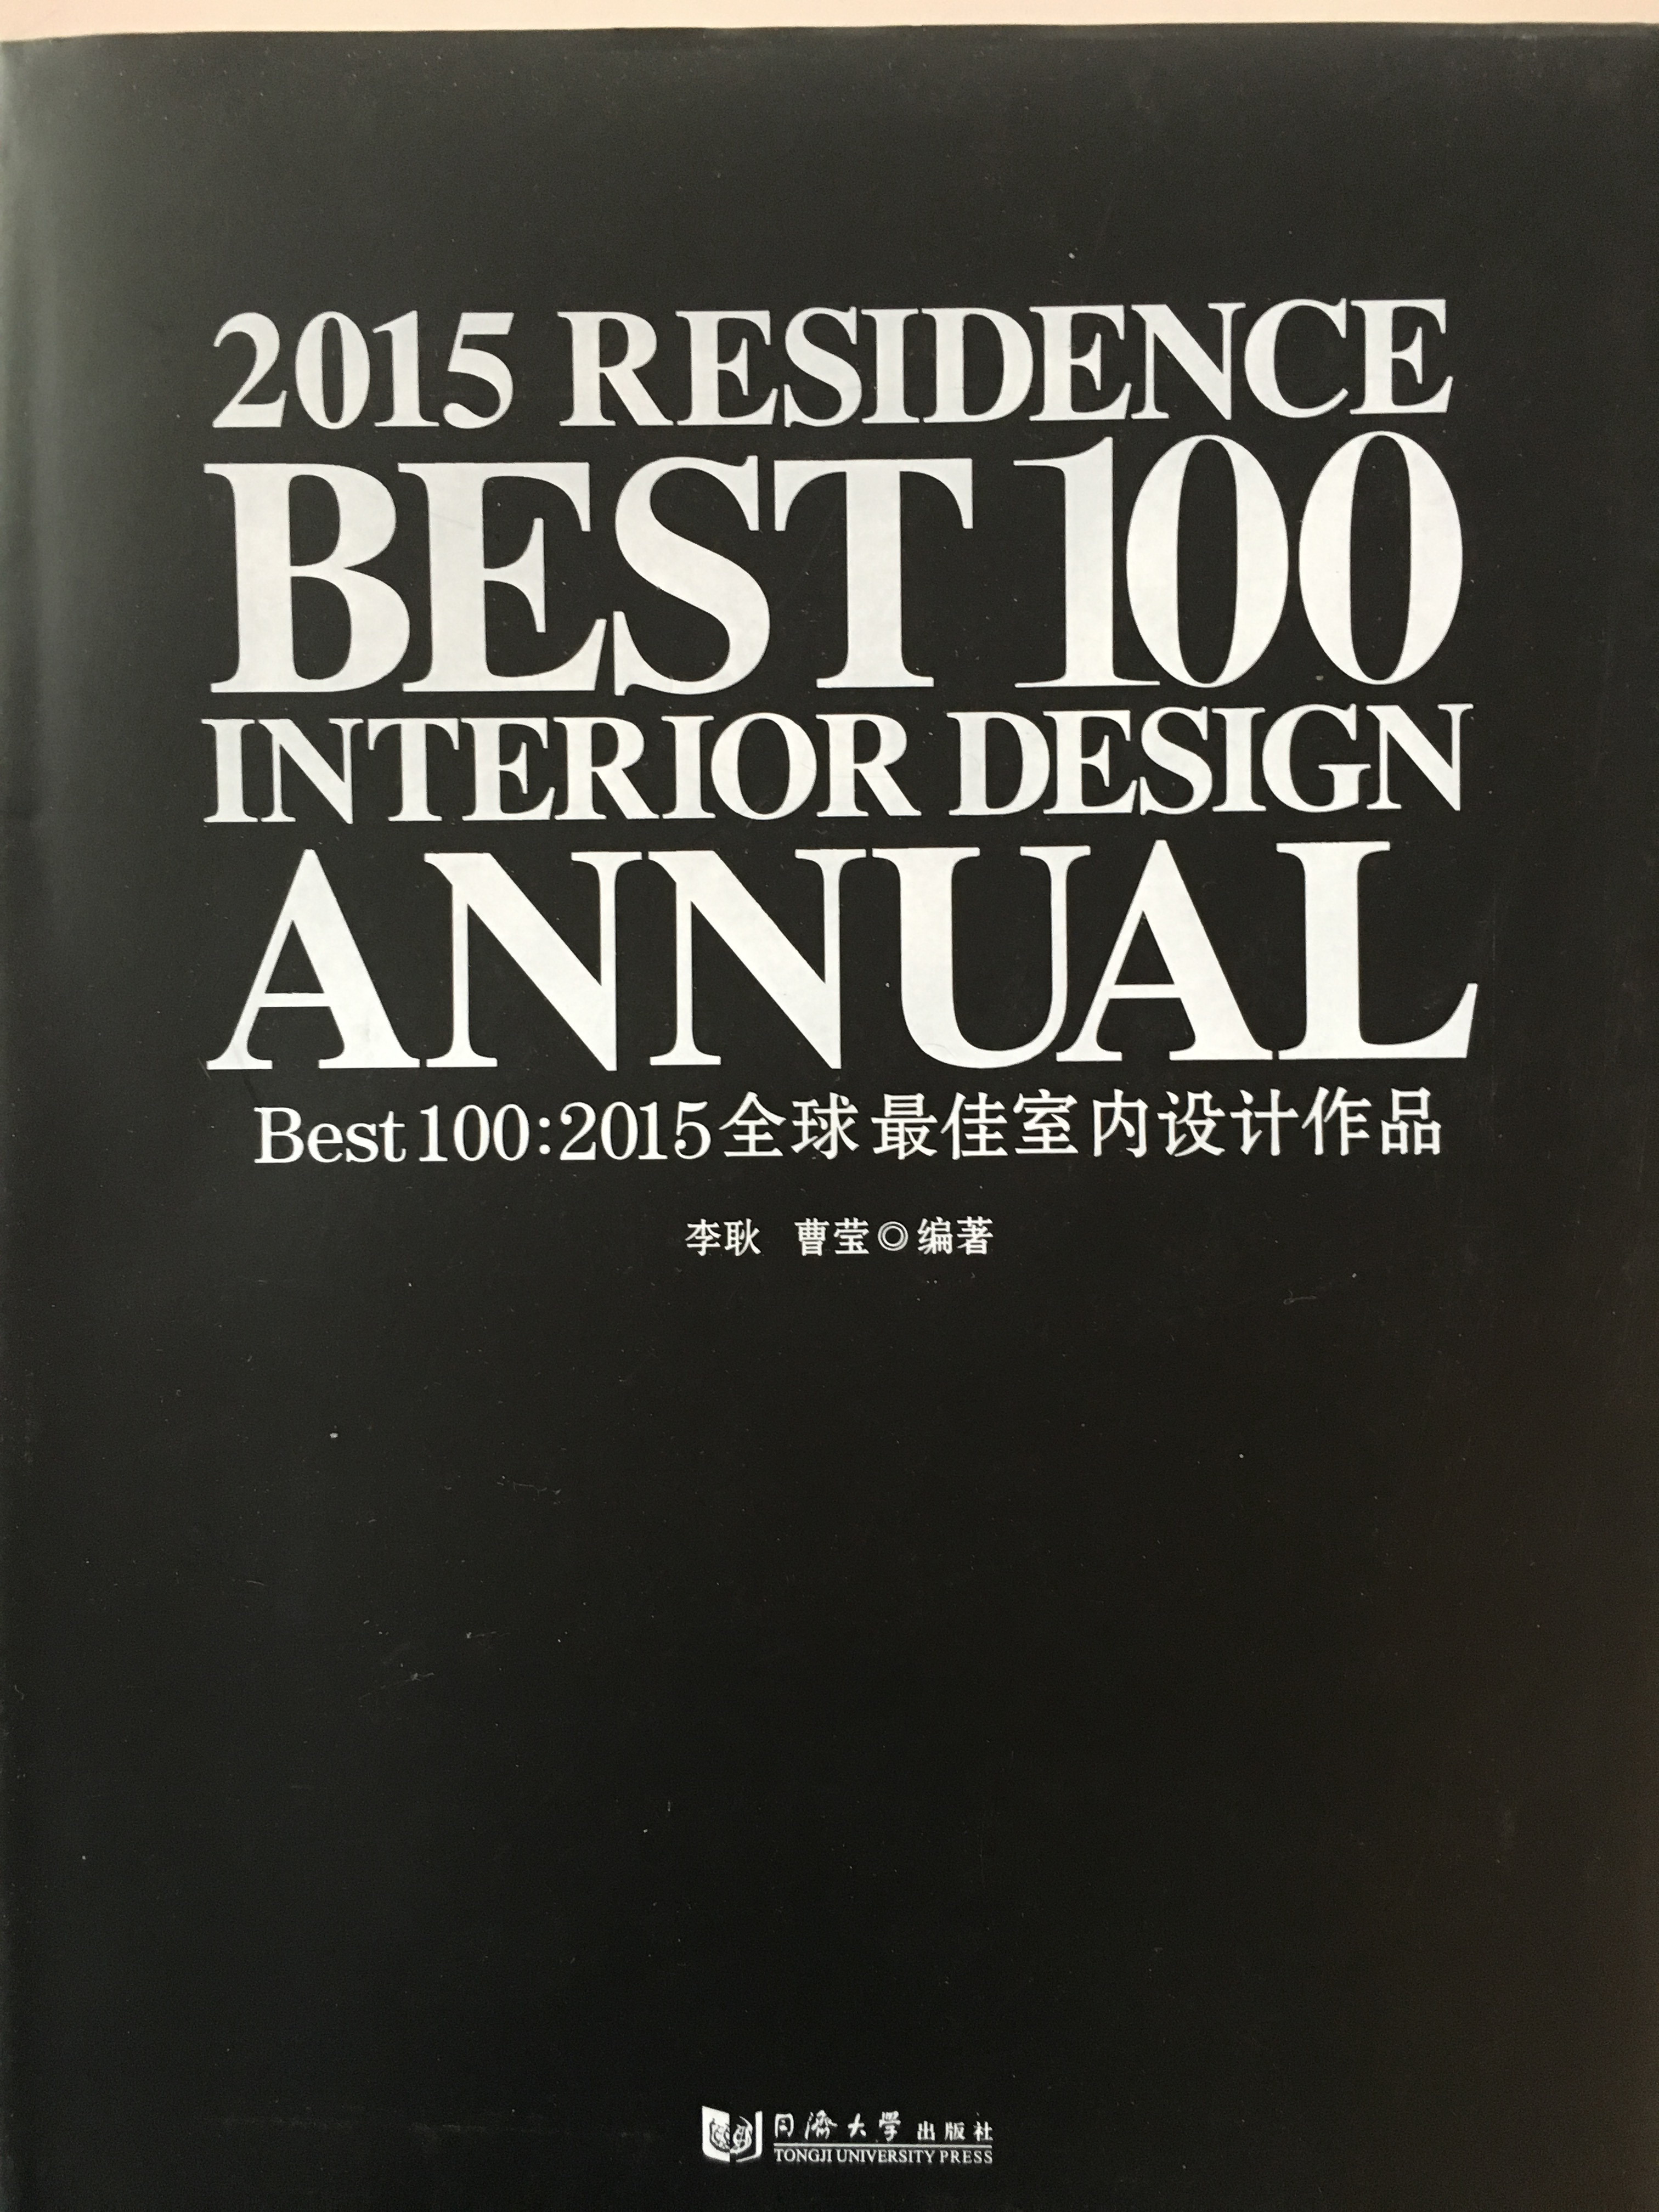 2015全球最佳室内设计作品